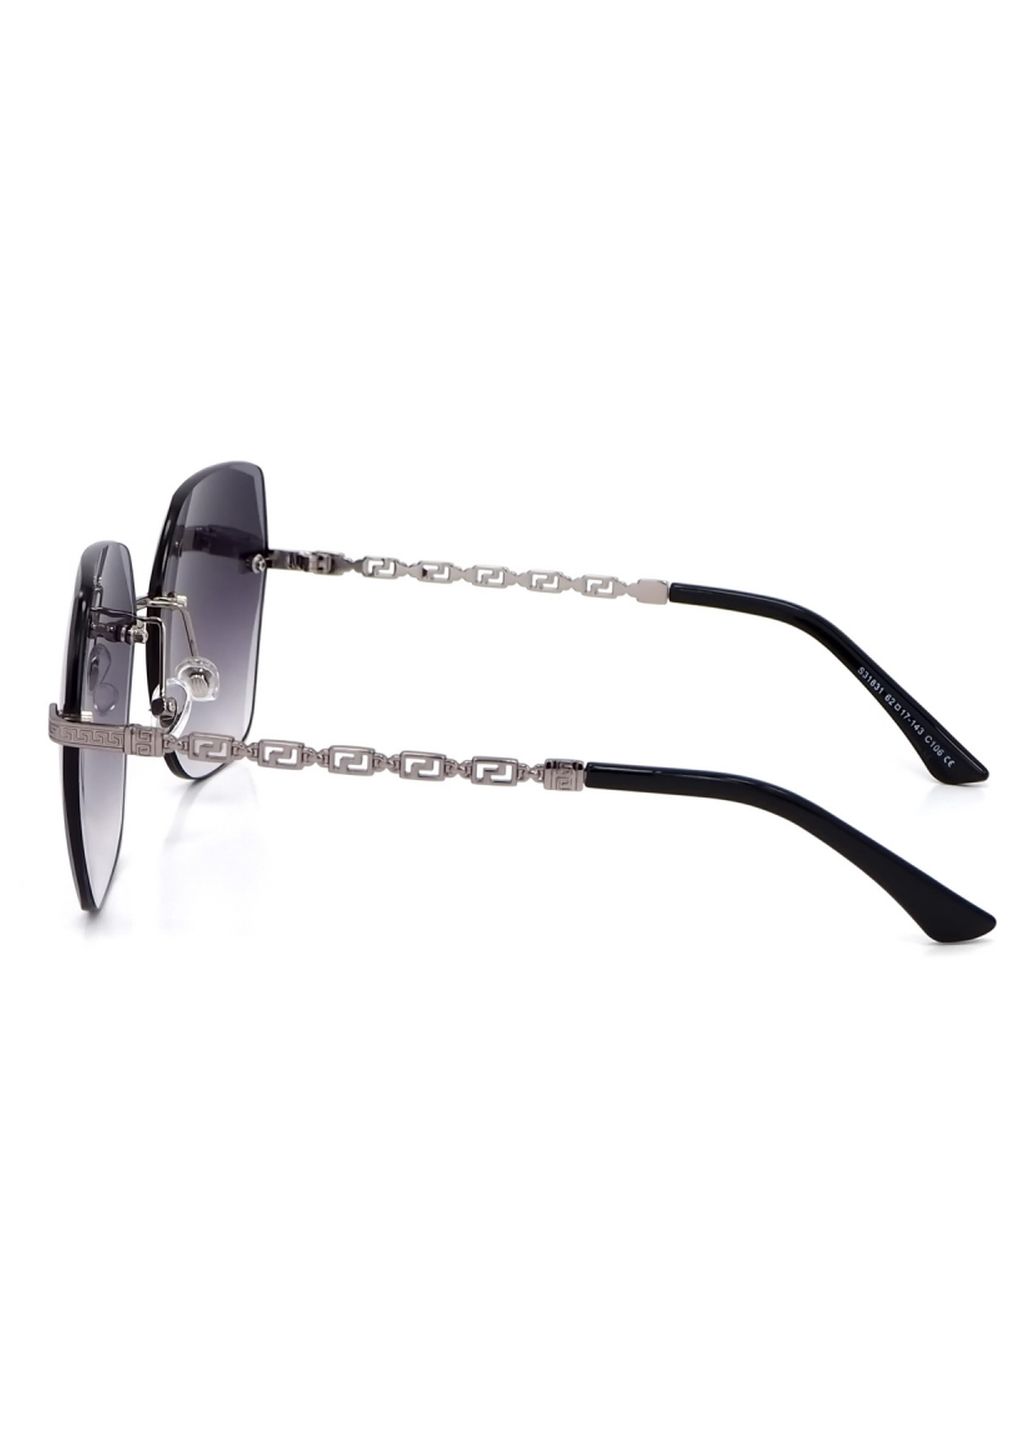 Купить Женские солнцезащитные очки Merlini с поляризацией S31831 117088 - Серый в интернет-магазине